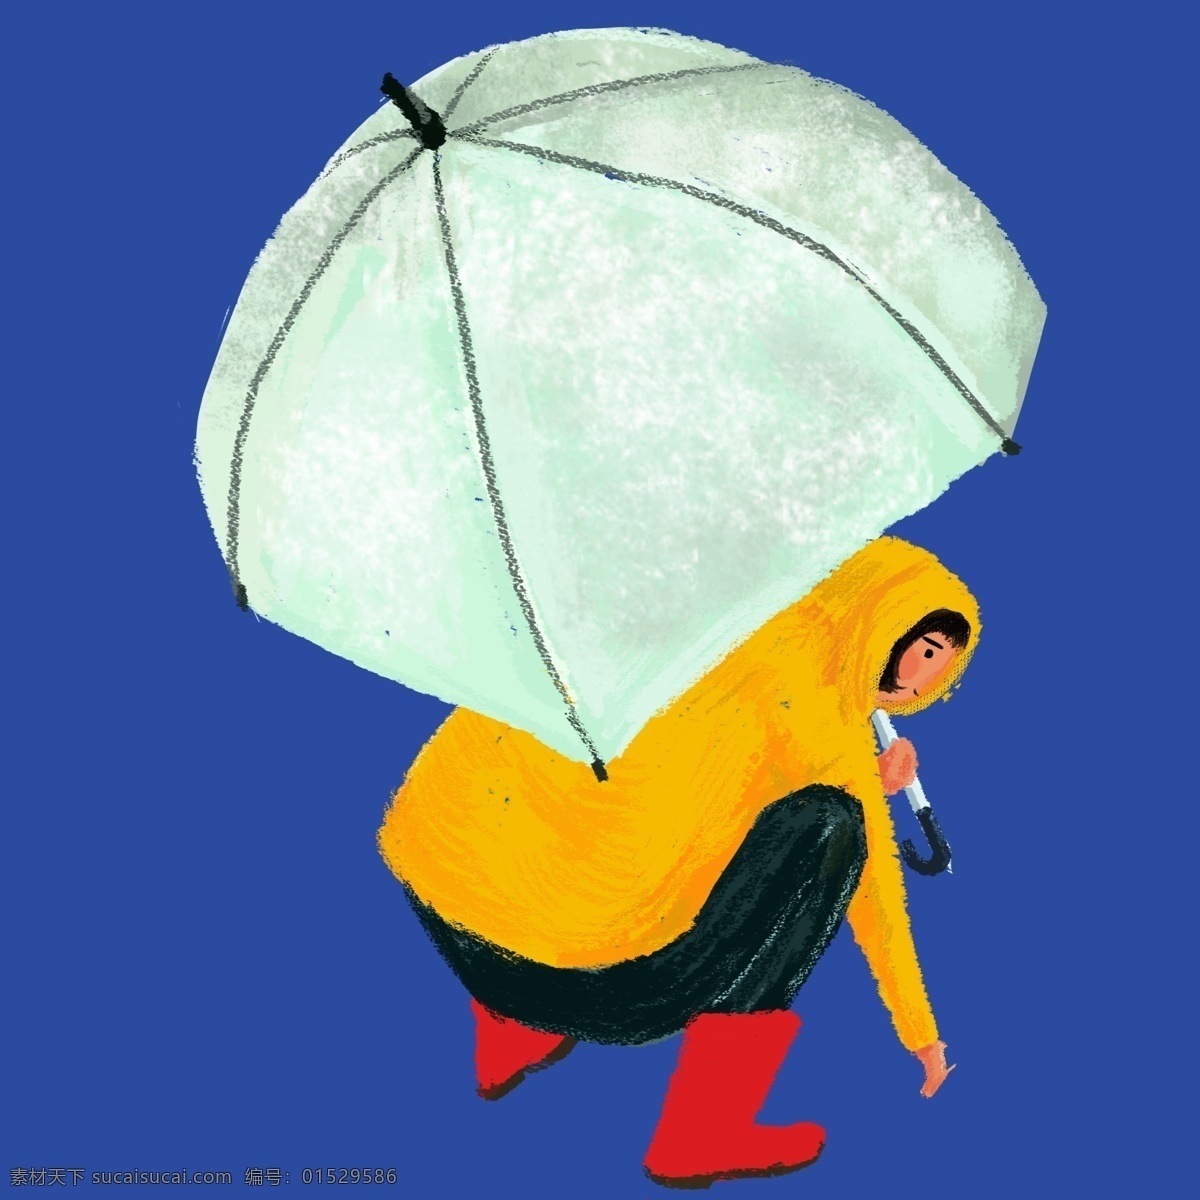 一个 蹲 撑 伞 人 蹲着 撑着伞 下雨天 撑着伞的人物 雨伞 二十四节气 下雨 雨水 中国传统节日 雨衣 雨鞋